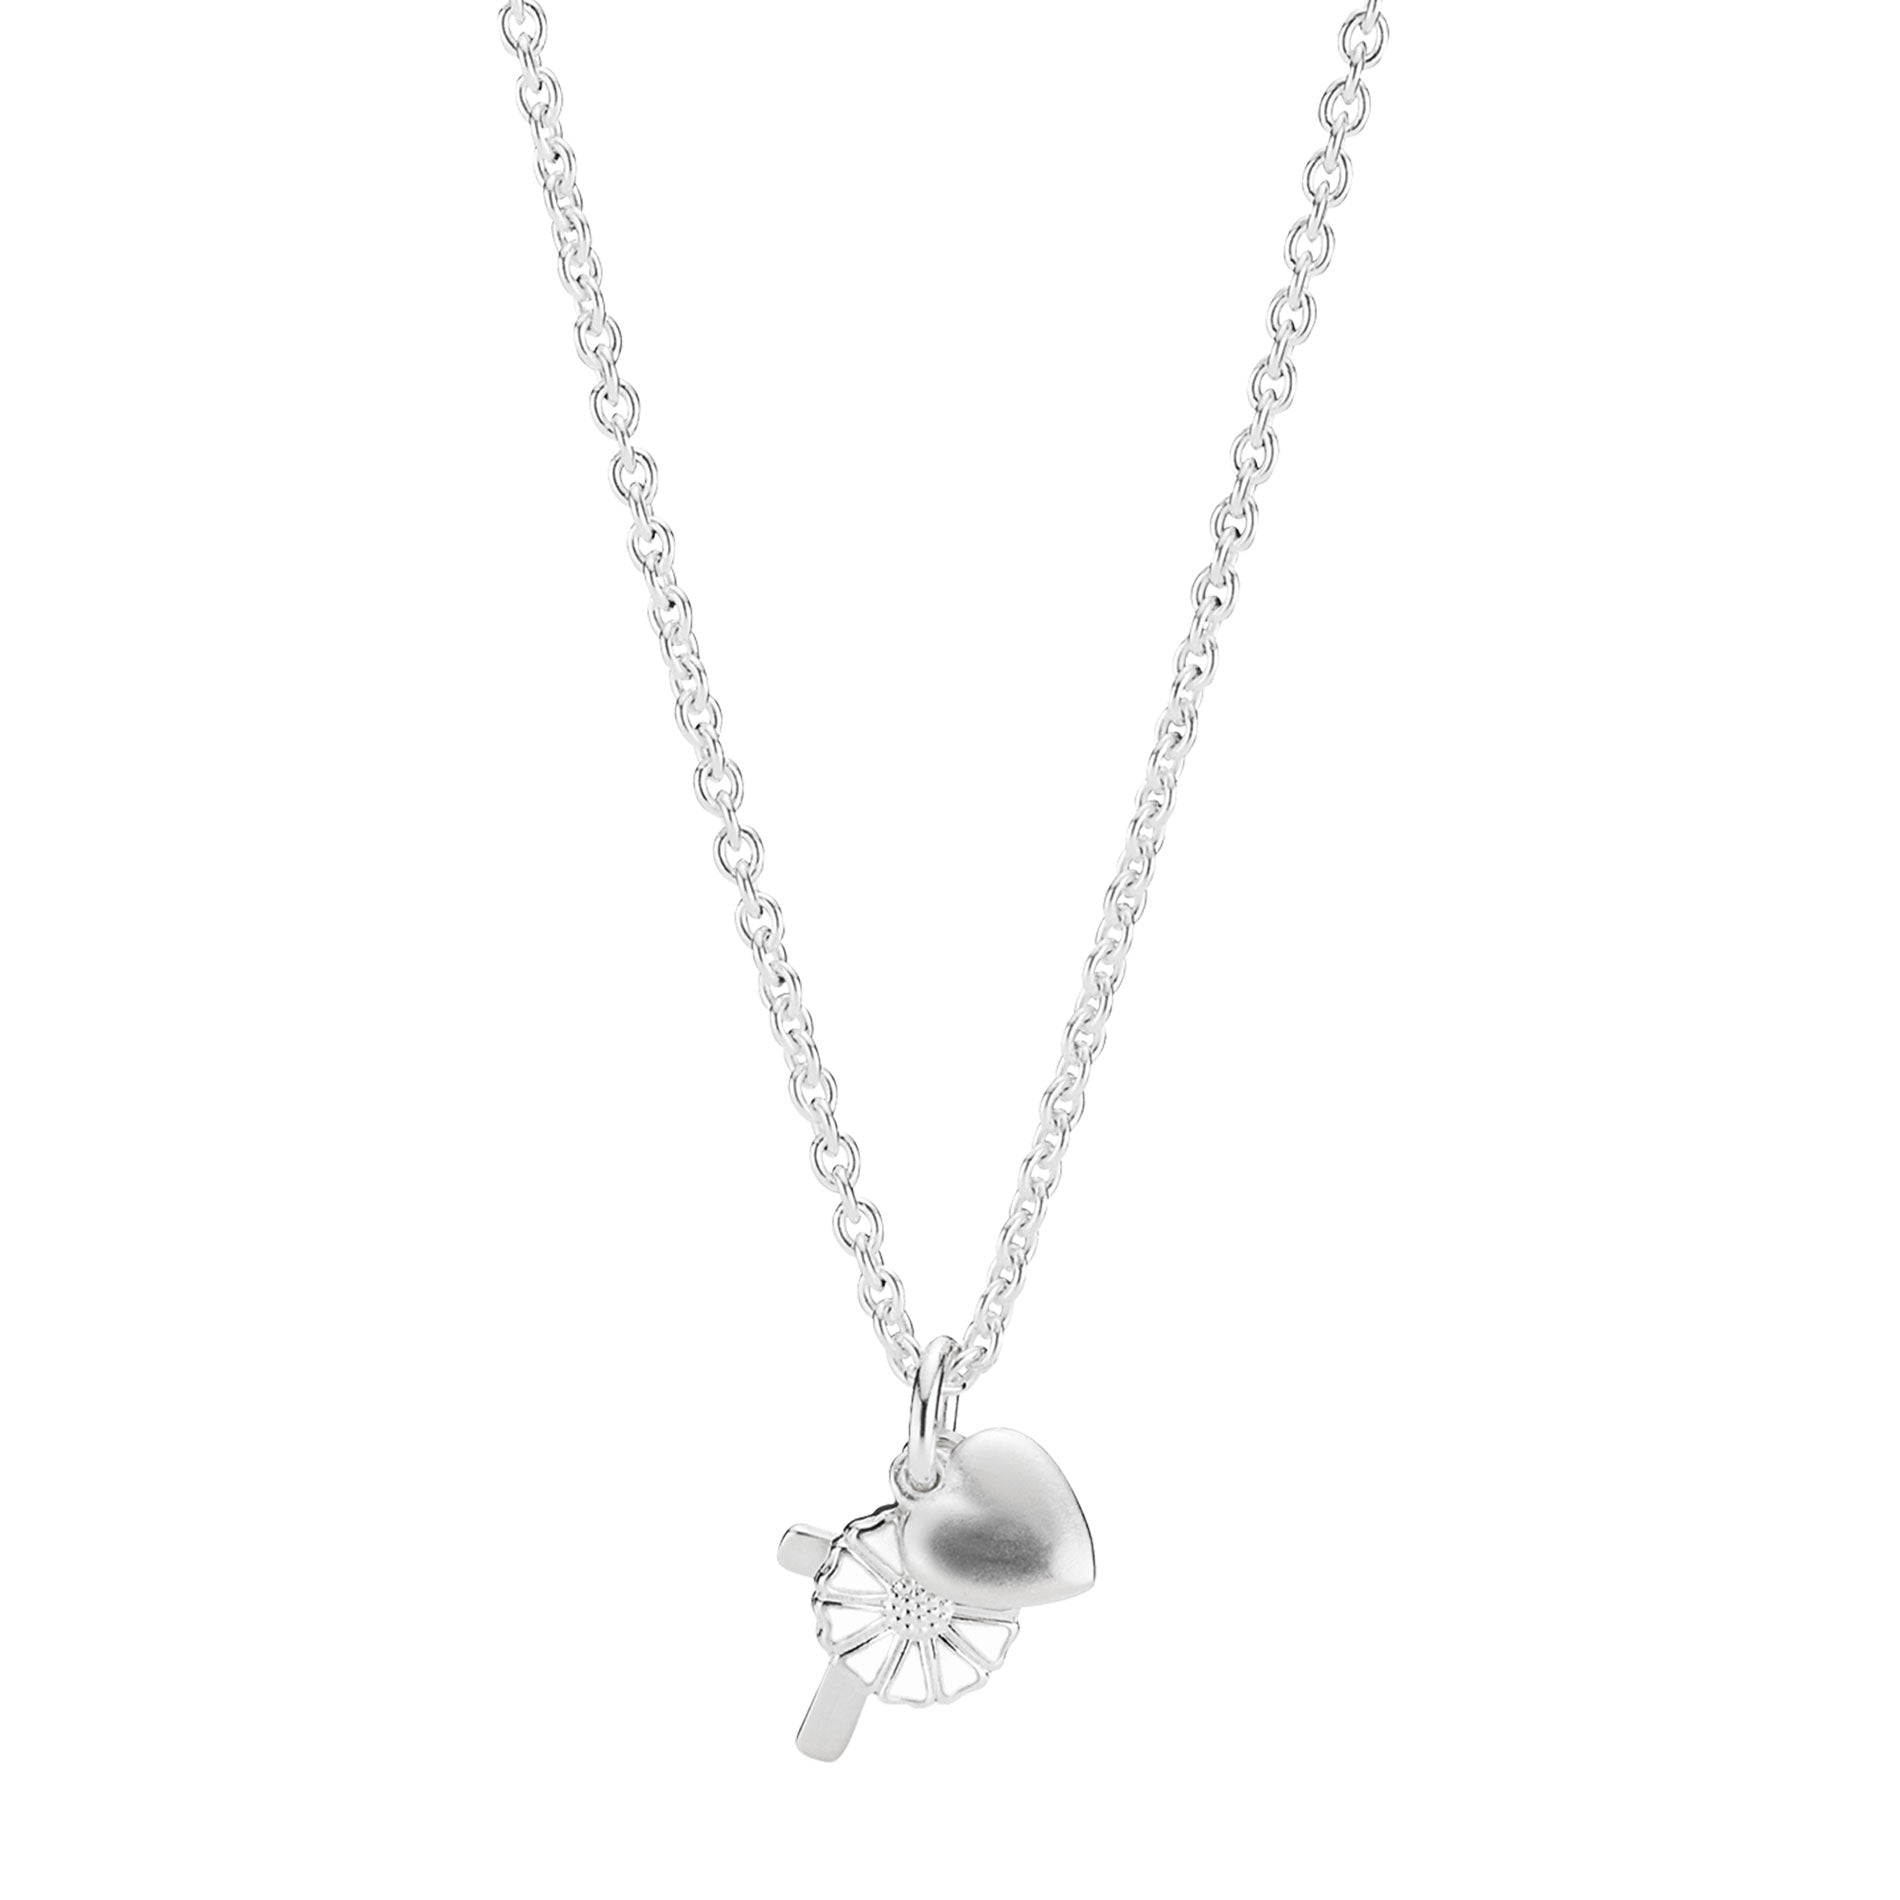 Sølv halskæde fra Lund Copenhagen med tro, håb og kærlighed